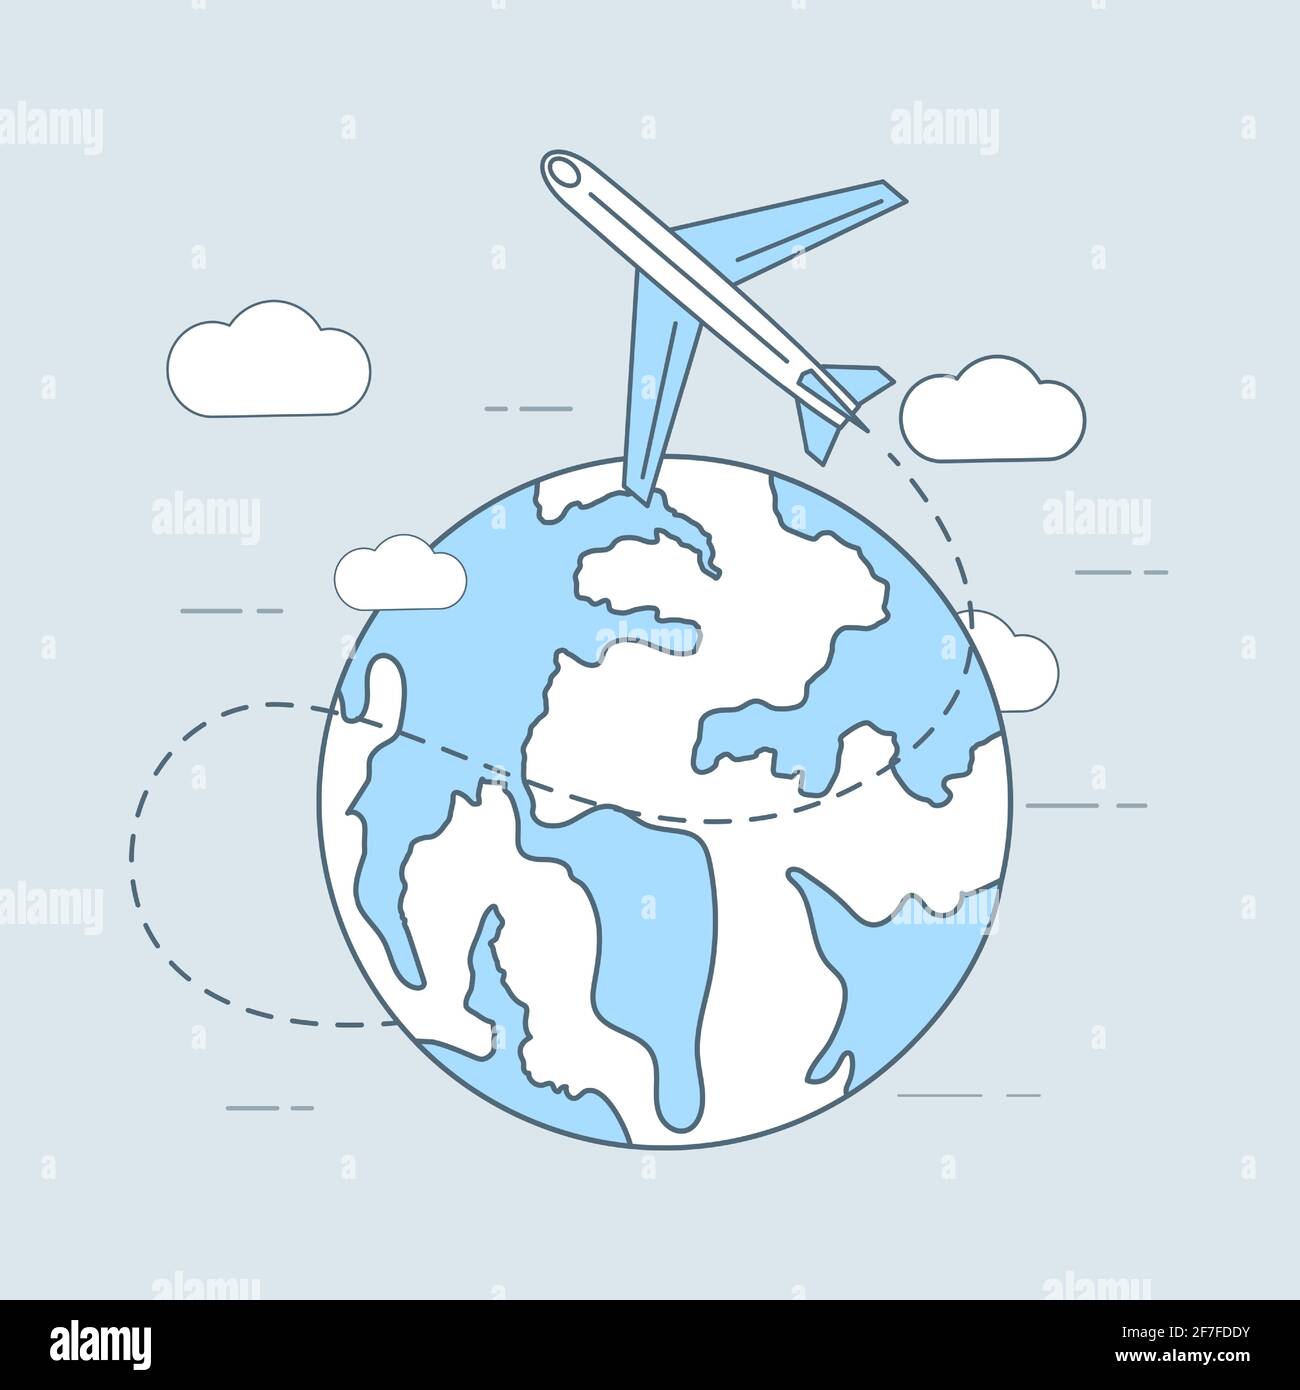 Dibujo de dibujo de dibujos animados de vector de viaje aéreo. Avión volando alrededor del planeta. Viajes, vacaciones, turismo, reservas online elementos de la aplicación. Avión volando alrededor del mundo, concepto de